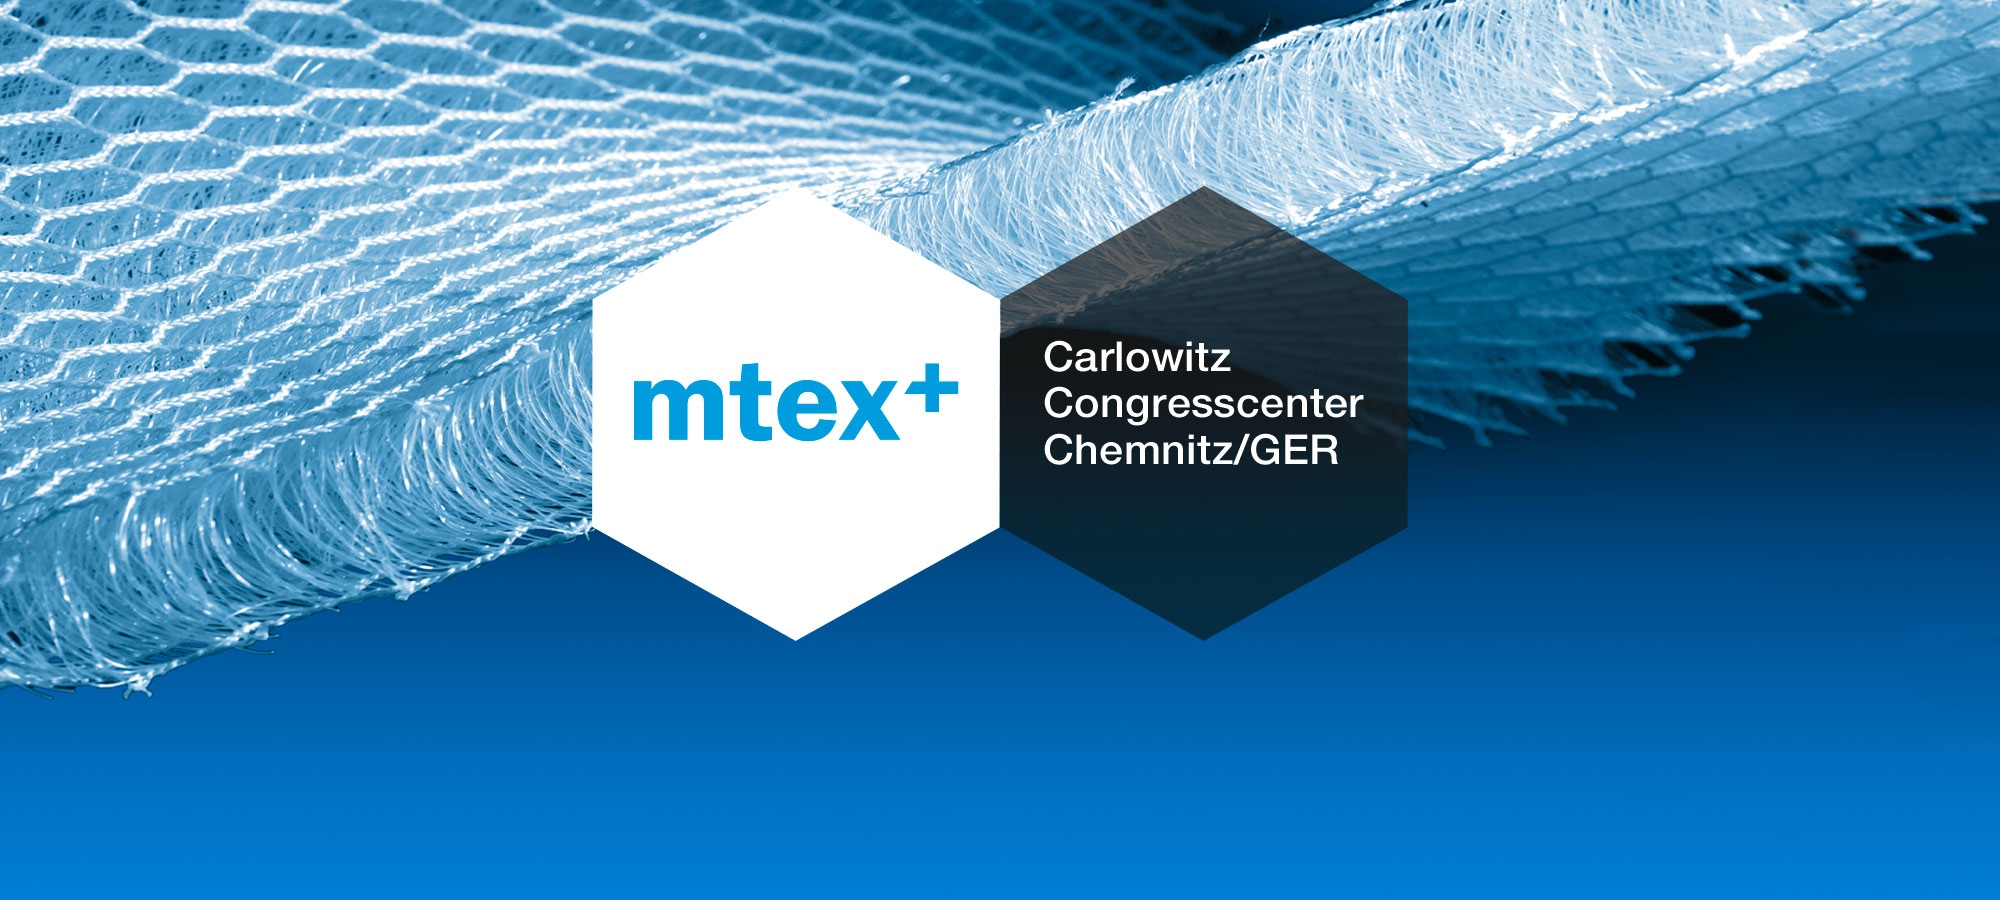 Header mtex+2020_Fair & Convention_Carlowitz Congresscenter Chemnitz